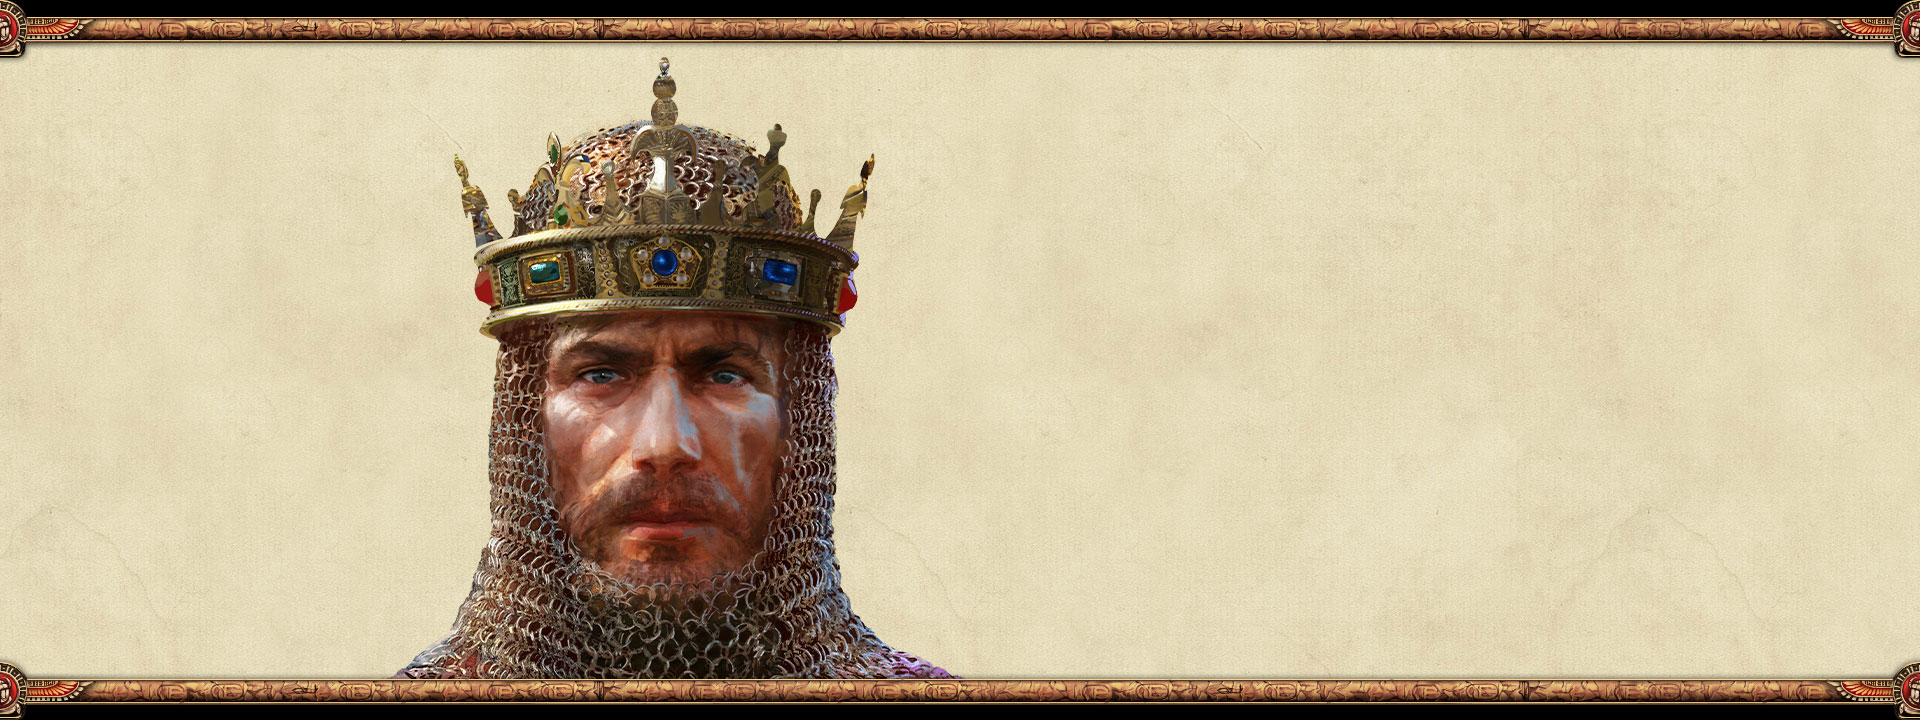 El dirigente de un imperio llevando una cota de malla y una corona